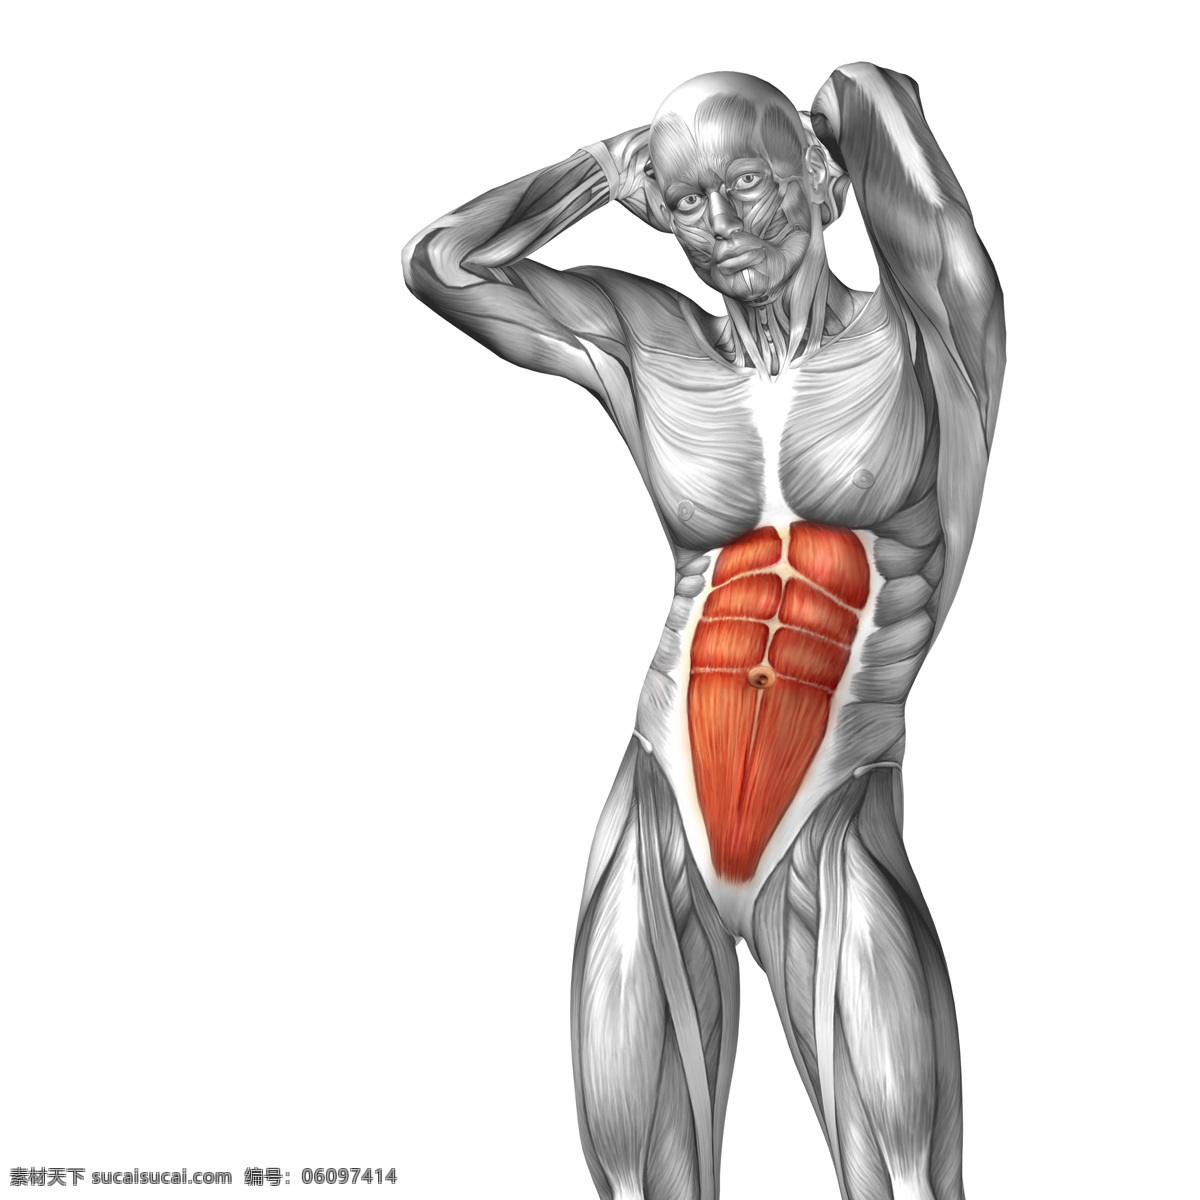 胃部 受伤 人体 人体器官 人体模型 人体结构图 受伤骨折 身体红肿 医疗护理 生病 生理疾病 受伤人物 现代科技